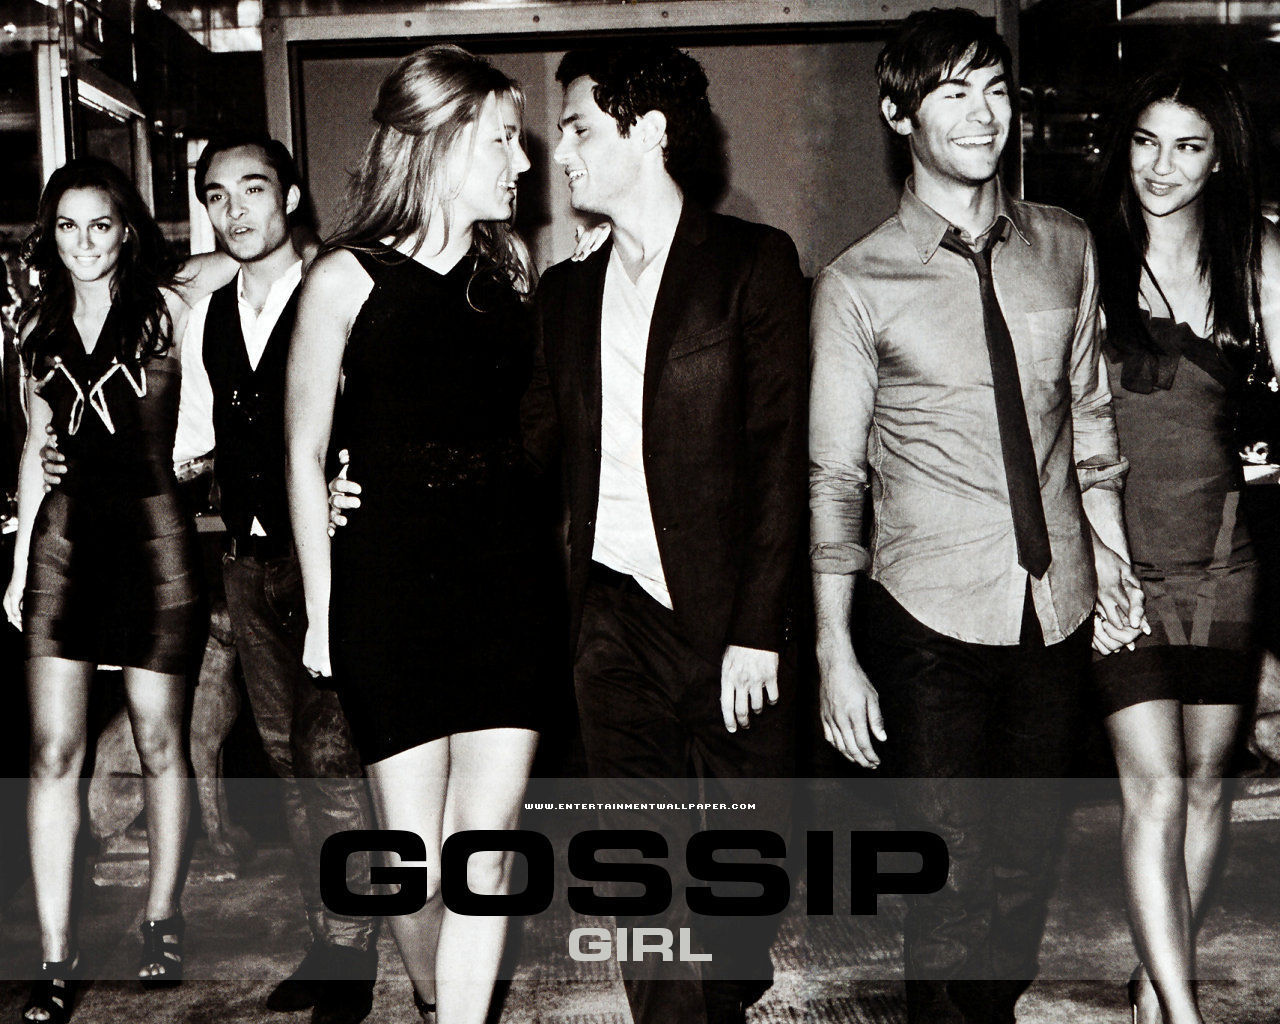 Gossip Girl (2007) Wallpapers